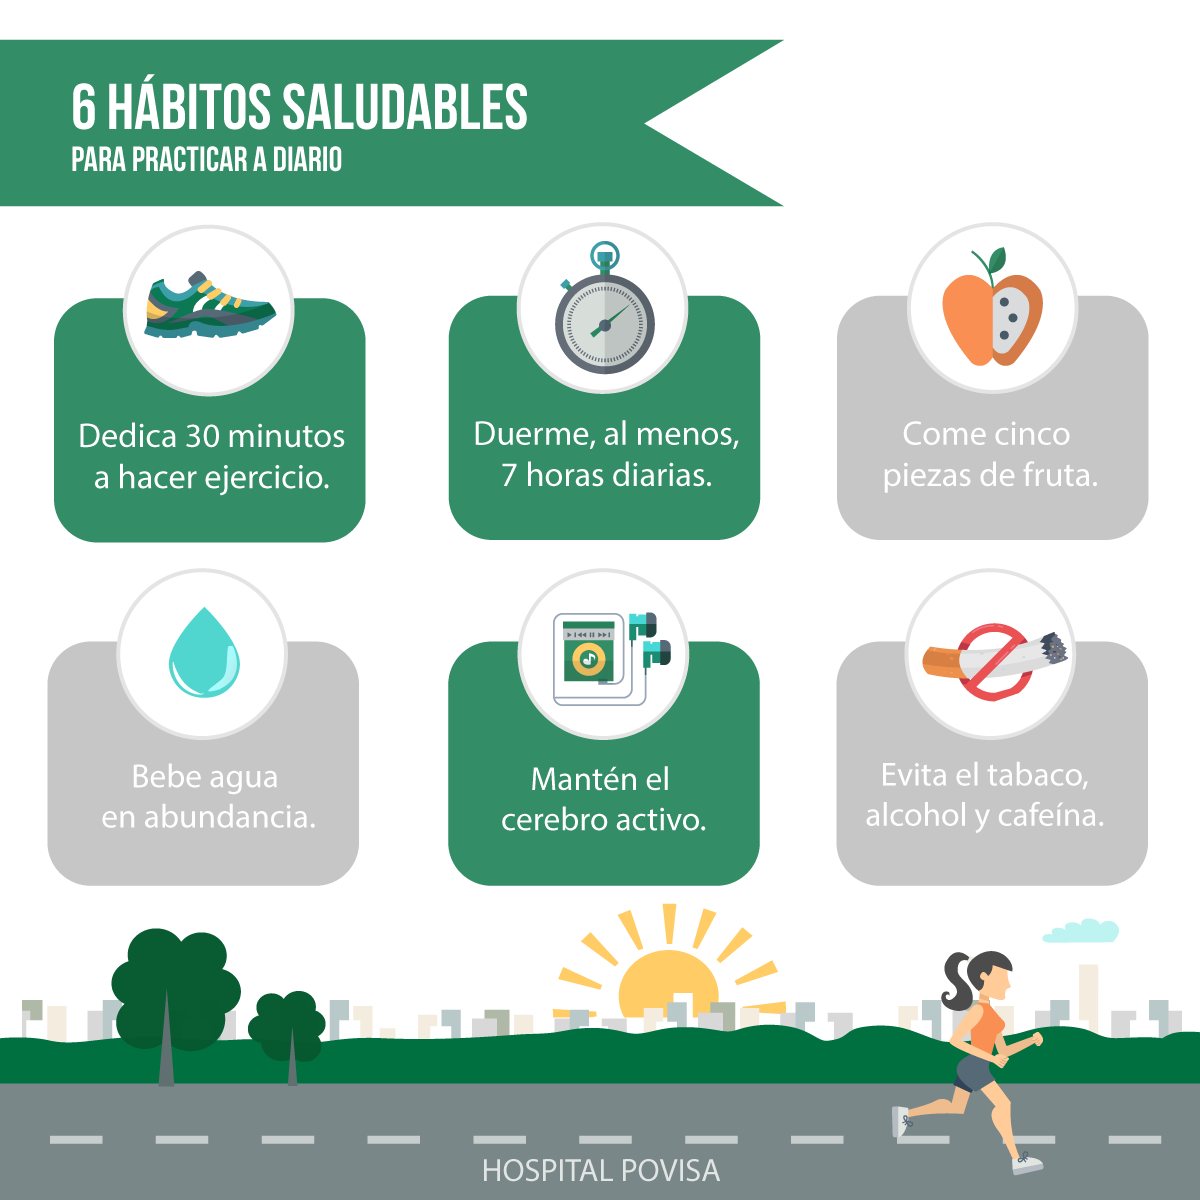 Infografia sobre Habitos Saludables 13254